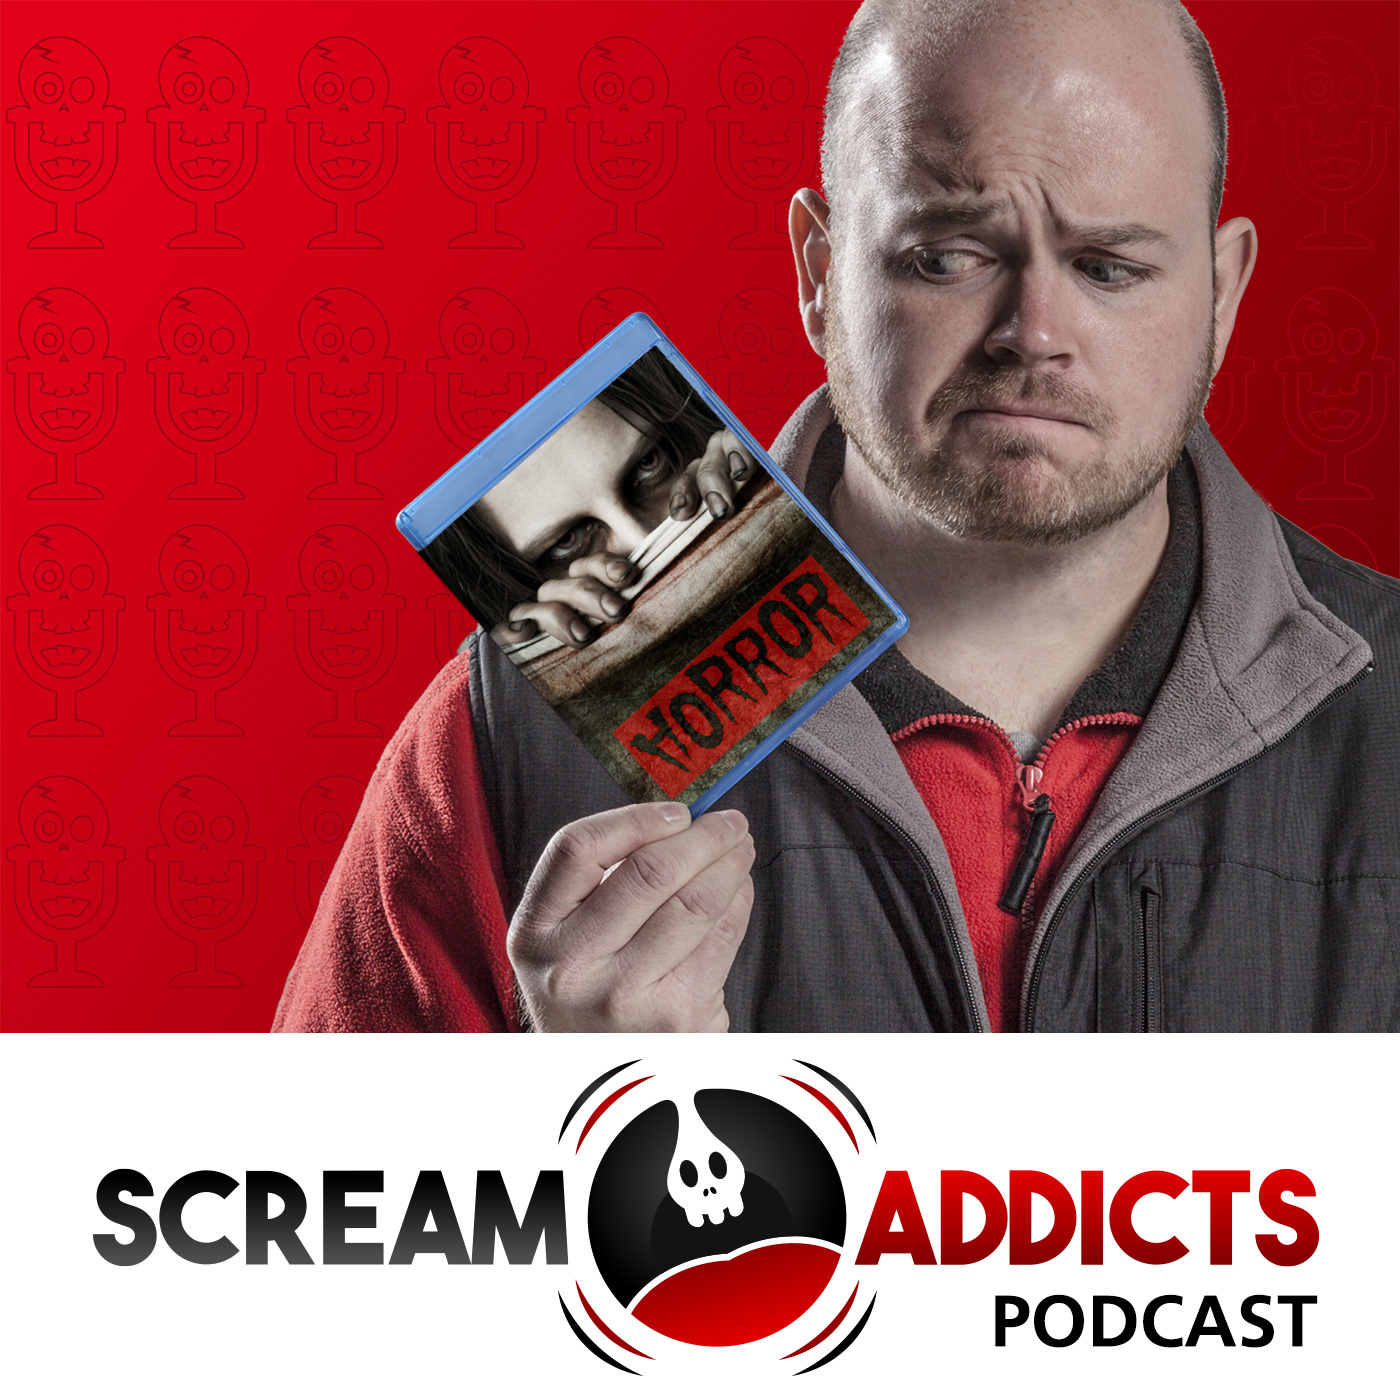 Scream Addicts Podcast: Horror movies | Movie reviews | Horror artwork